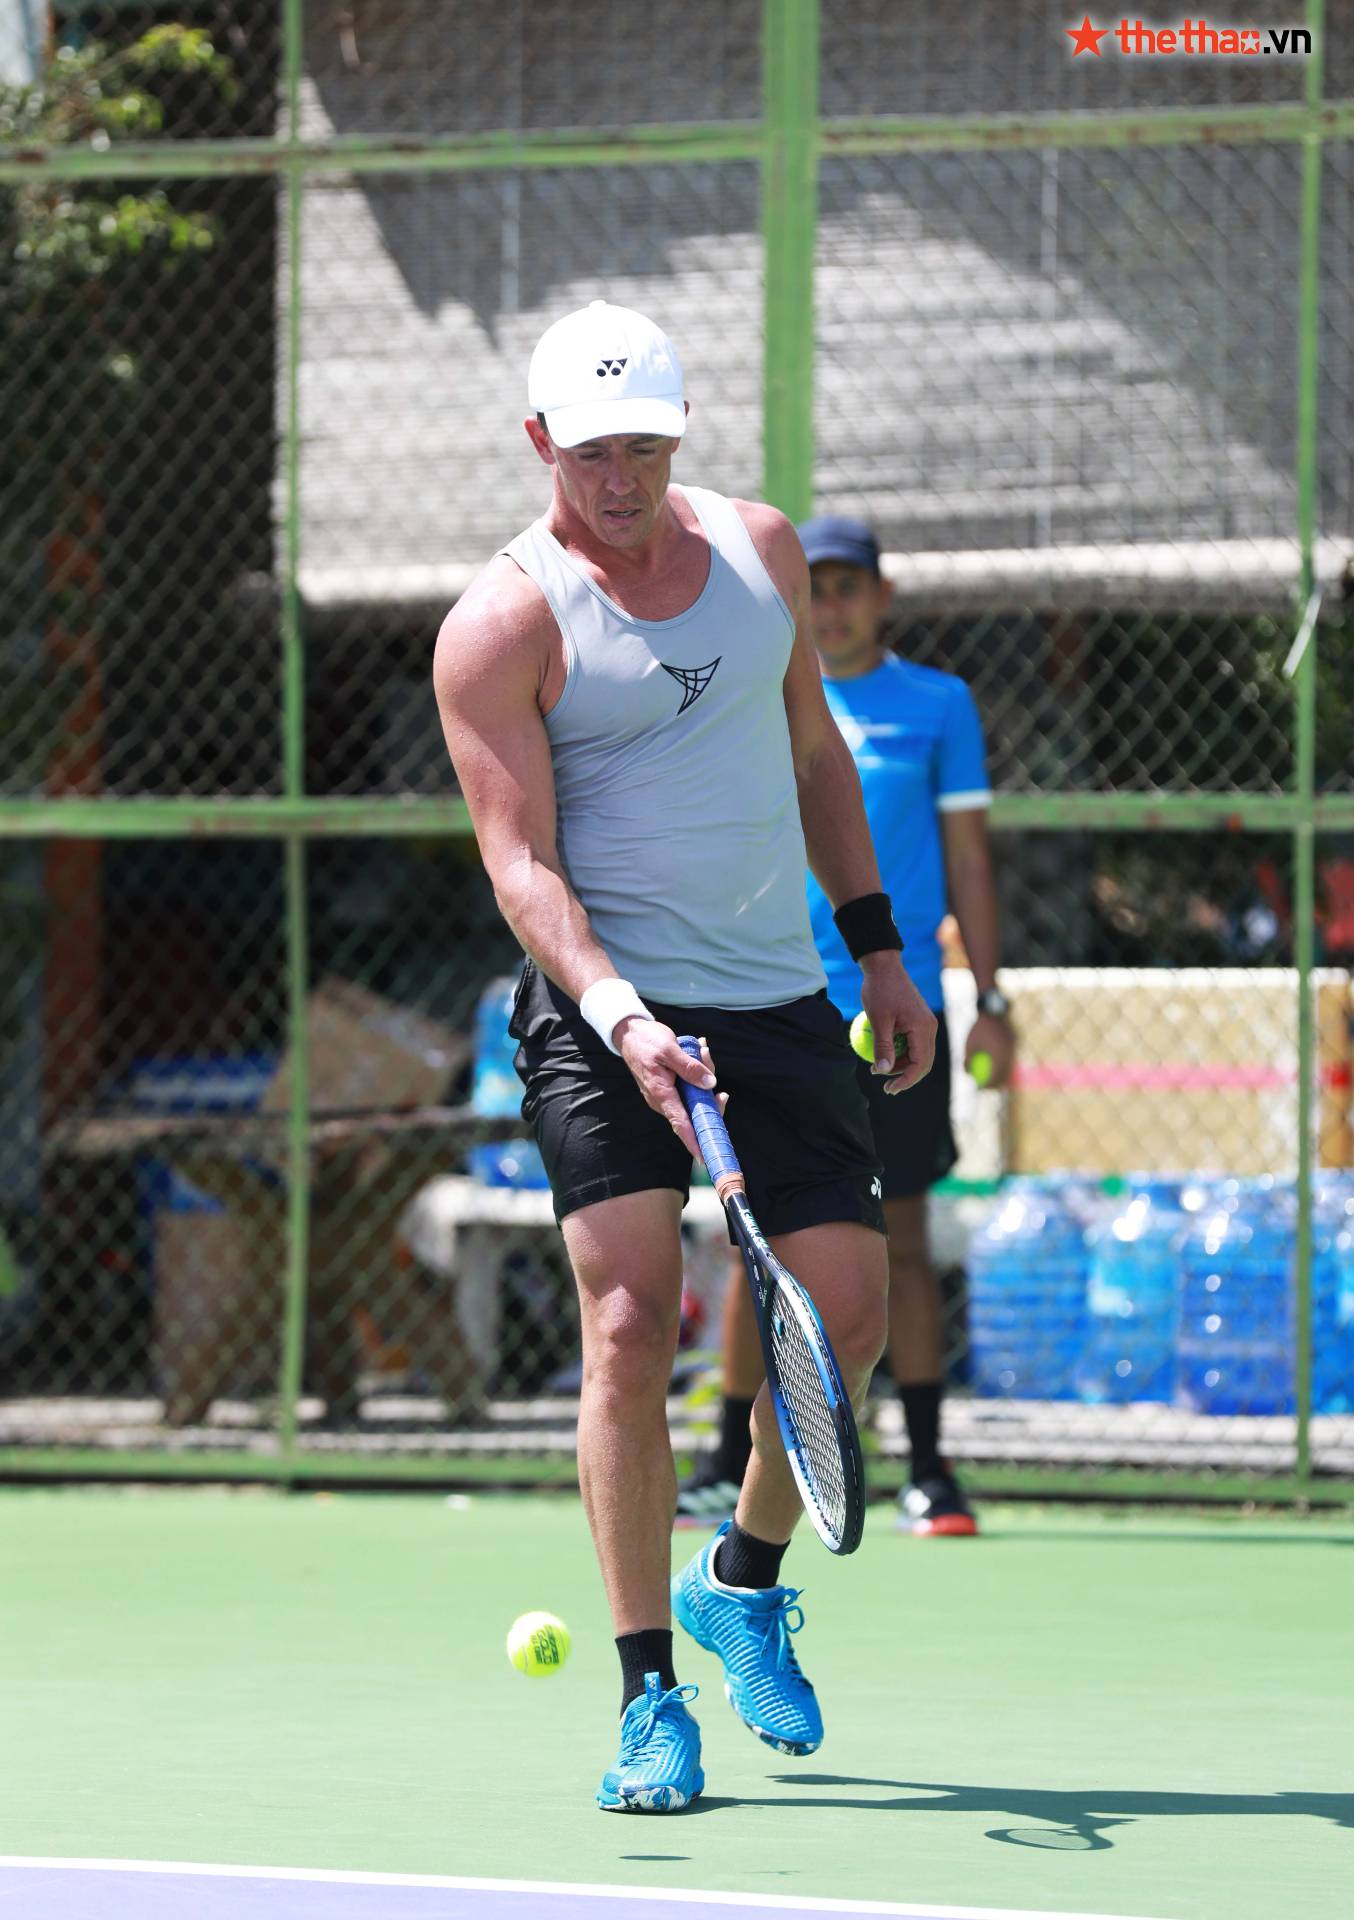 M25 Tây Ninh: Tay vợt New Zealand tập giữa trưa nắng, khoe cơ bắp cuồn cuộn ở tuổi 35 - Ảnh 10